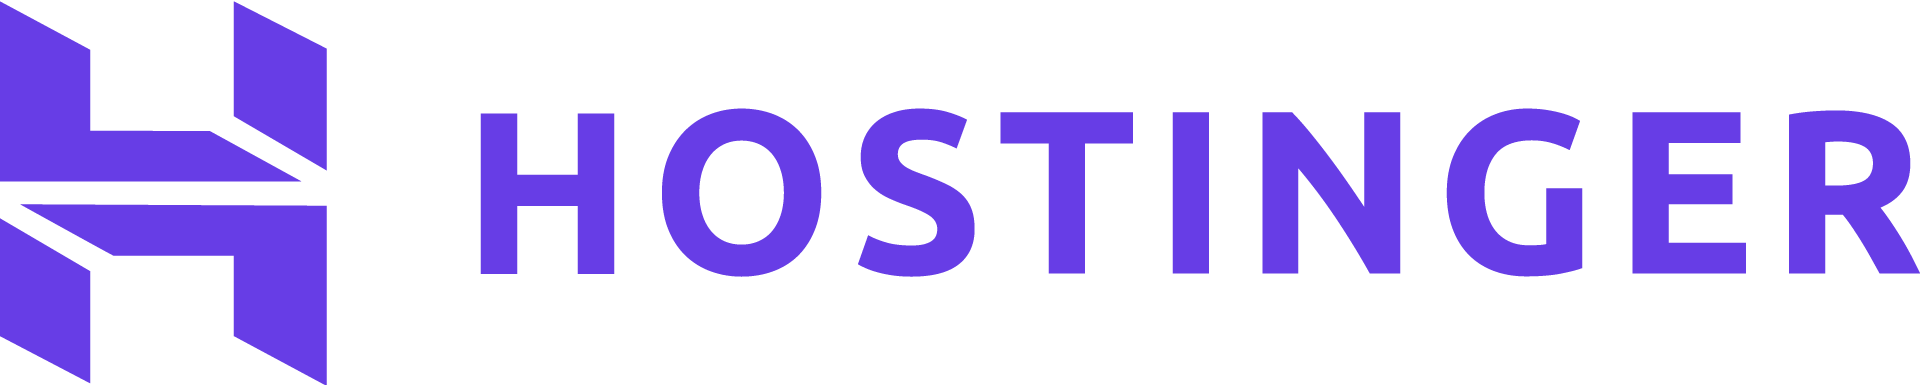 Hostinger-logo-primary